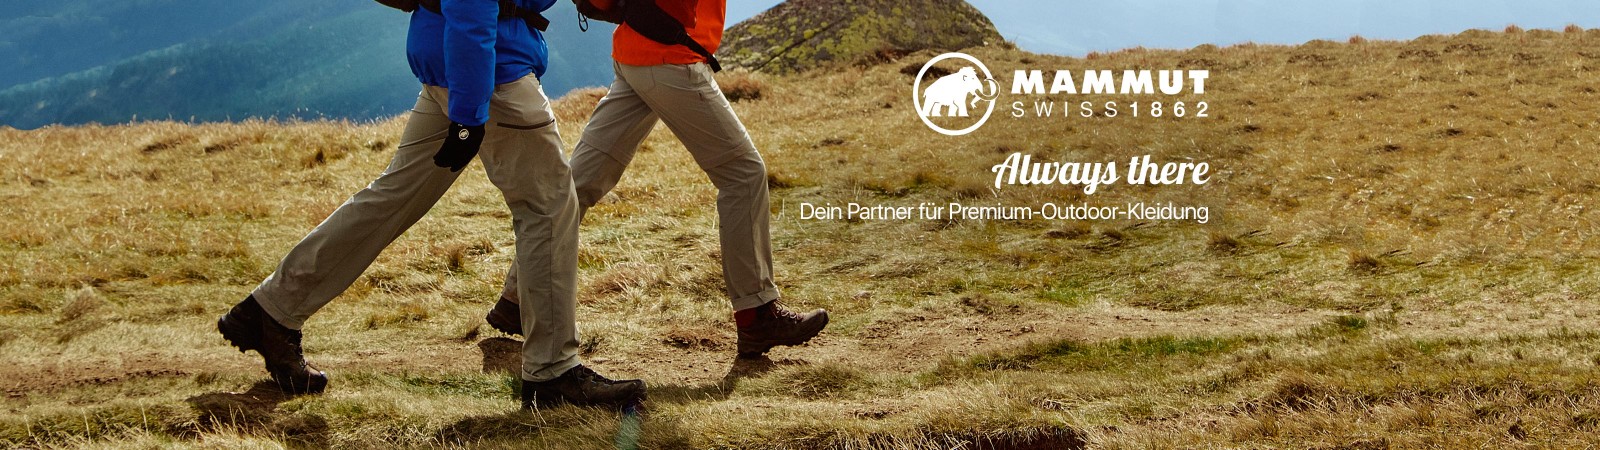 Always there - Mammut ist dein Partner für Premium-Outdoor-Kleidung..